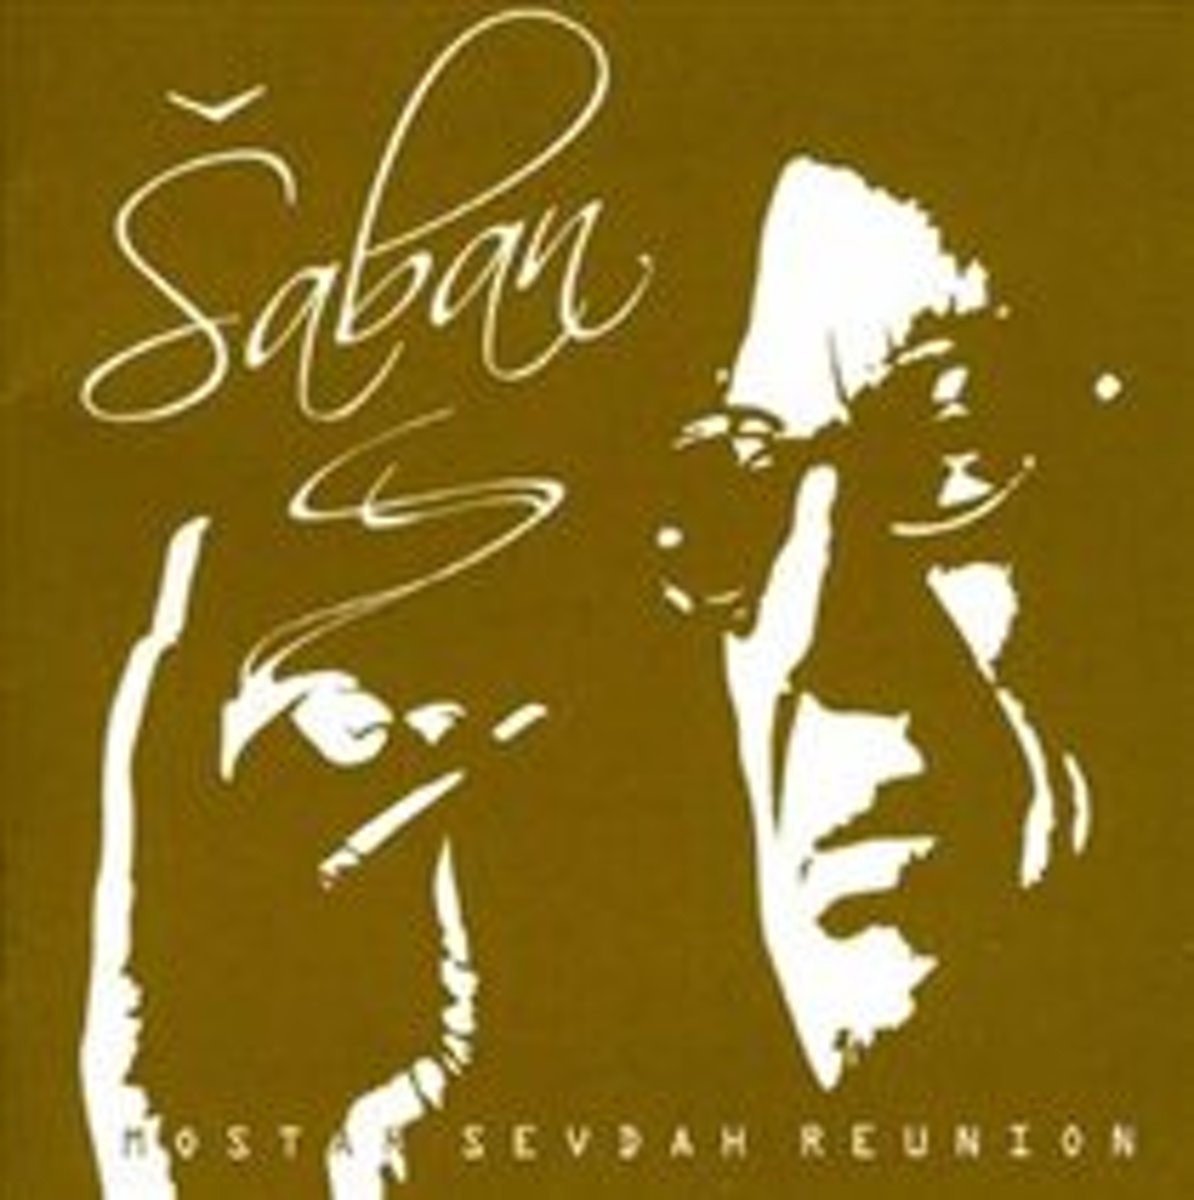 Saban Feat. Mostar Sevdah Reunion - Saban (CD) - Saban Feat. Mostar Sevdah Reunion